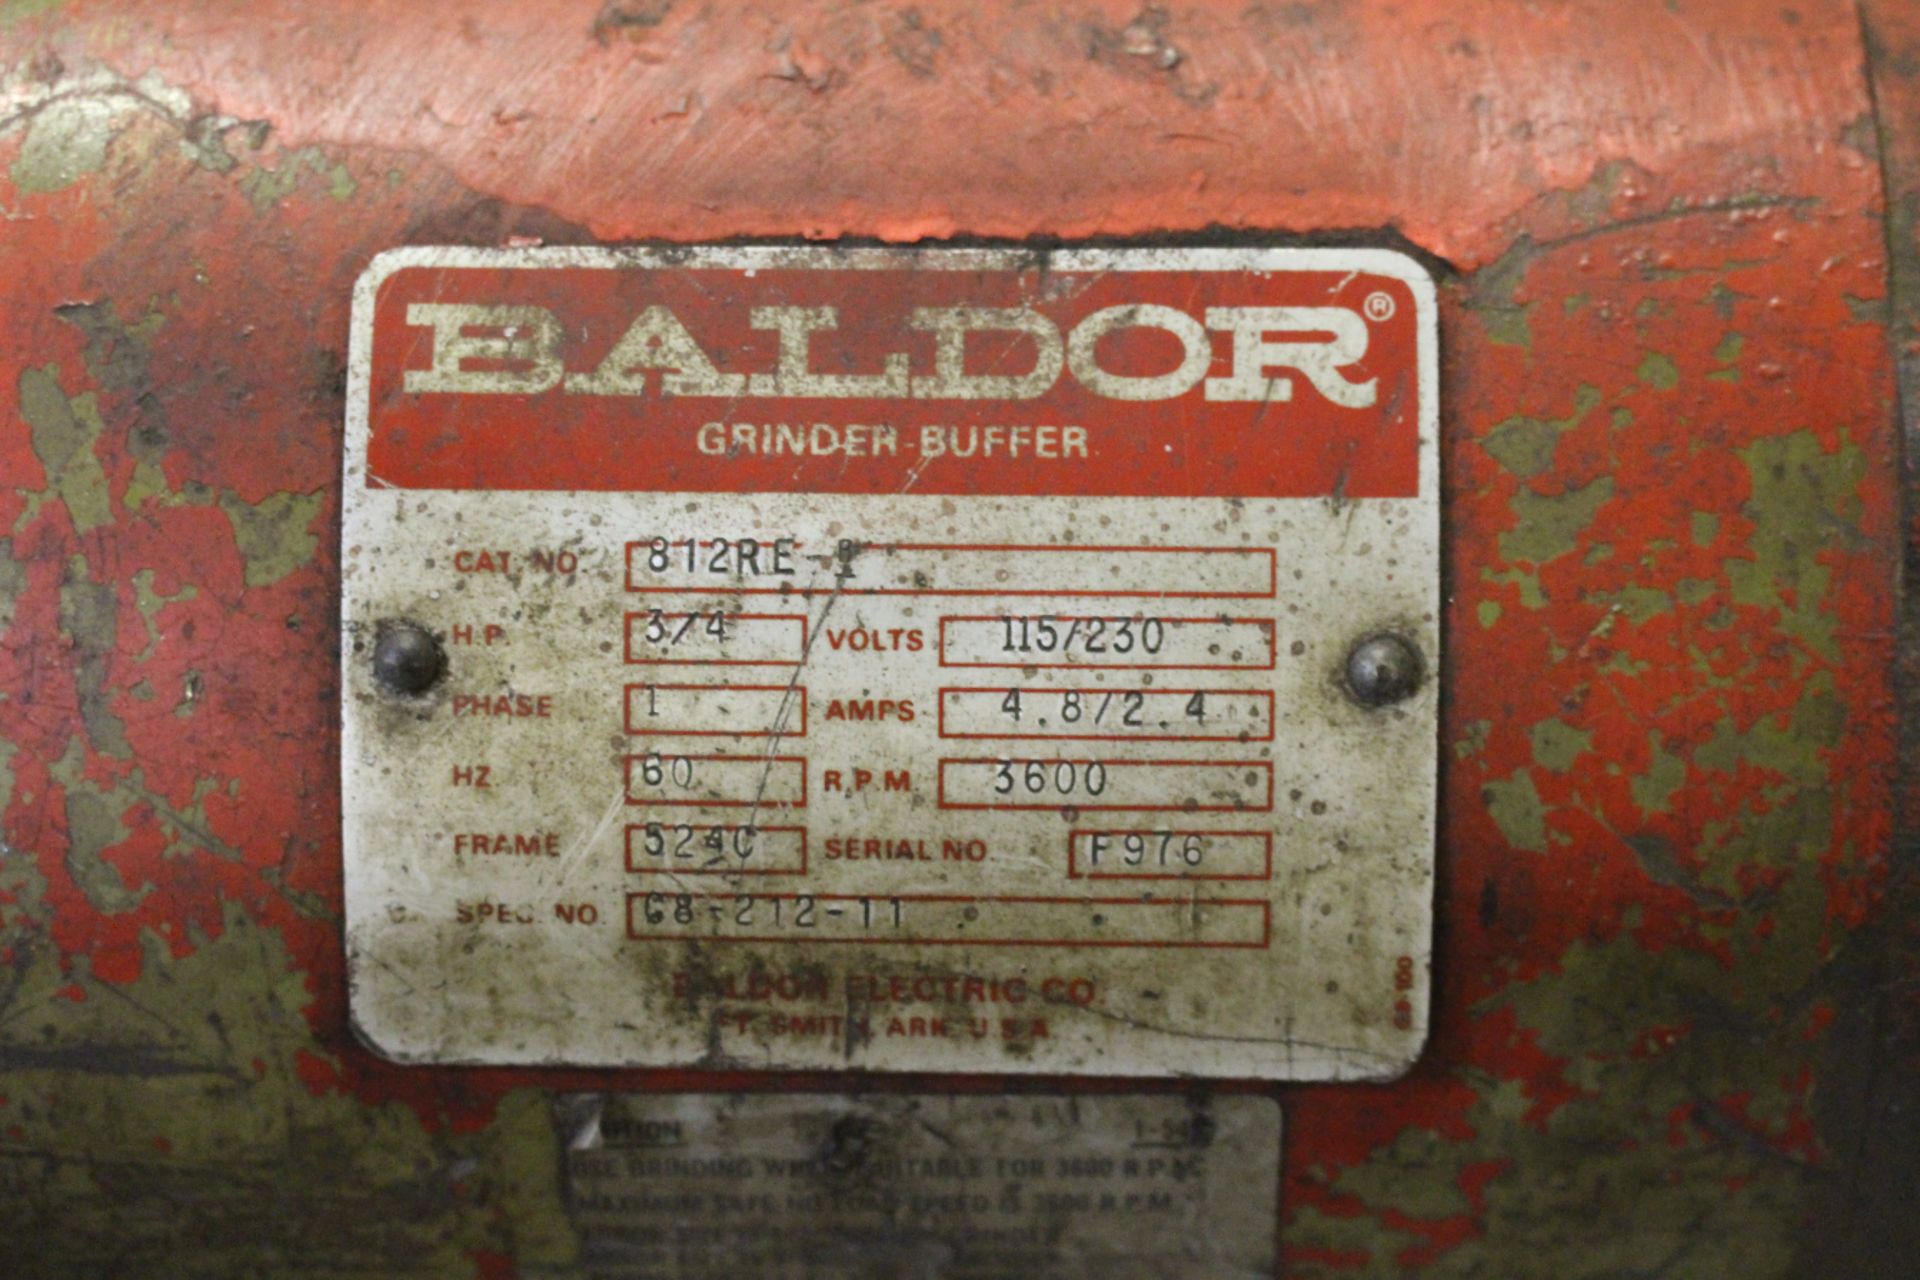 Baldor Grinder-Buffer - Image 2 of 2